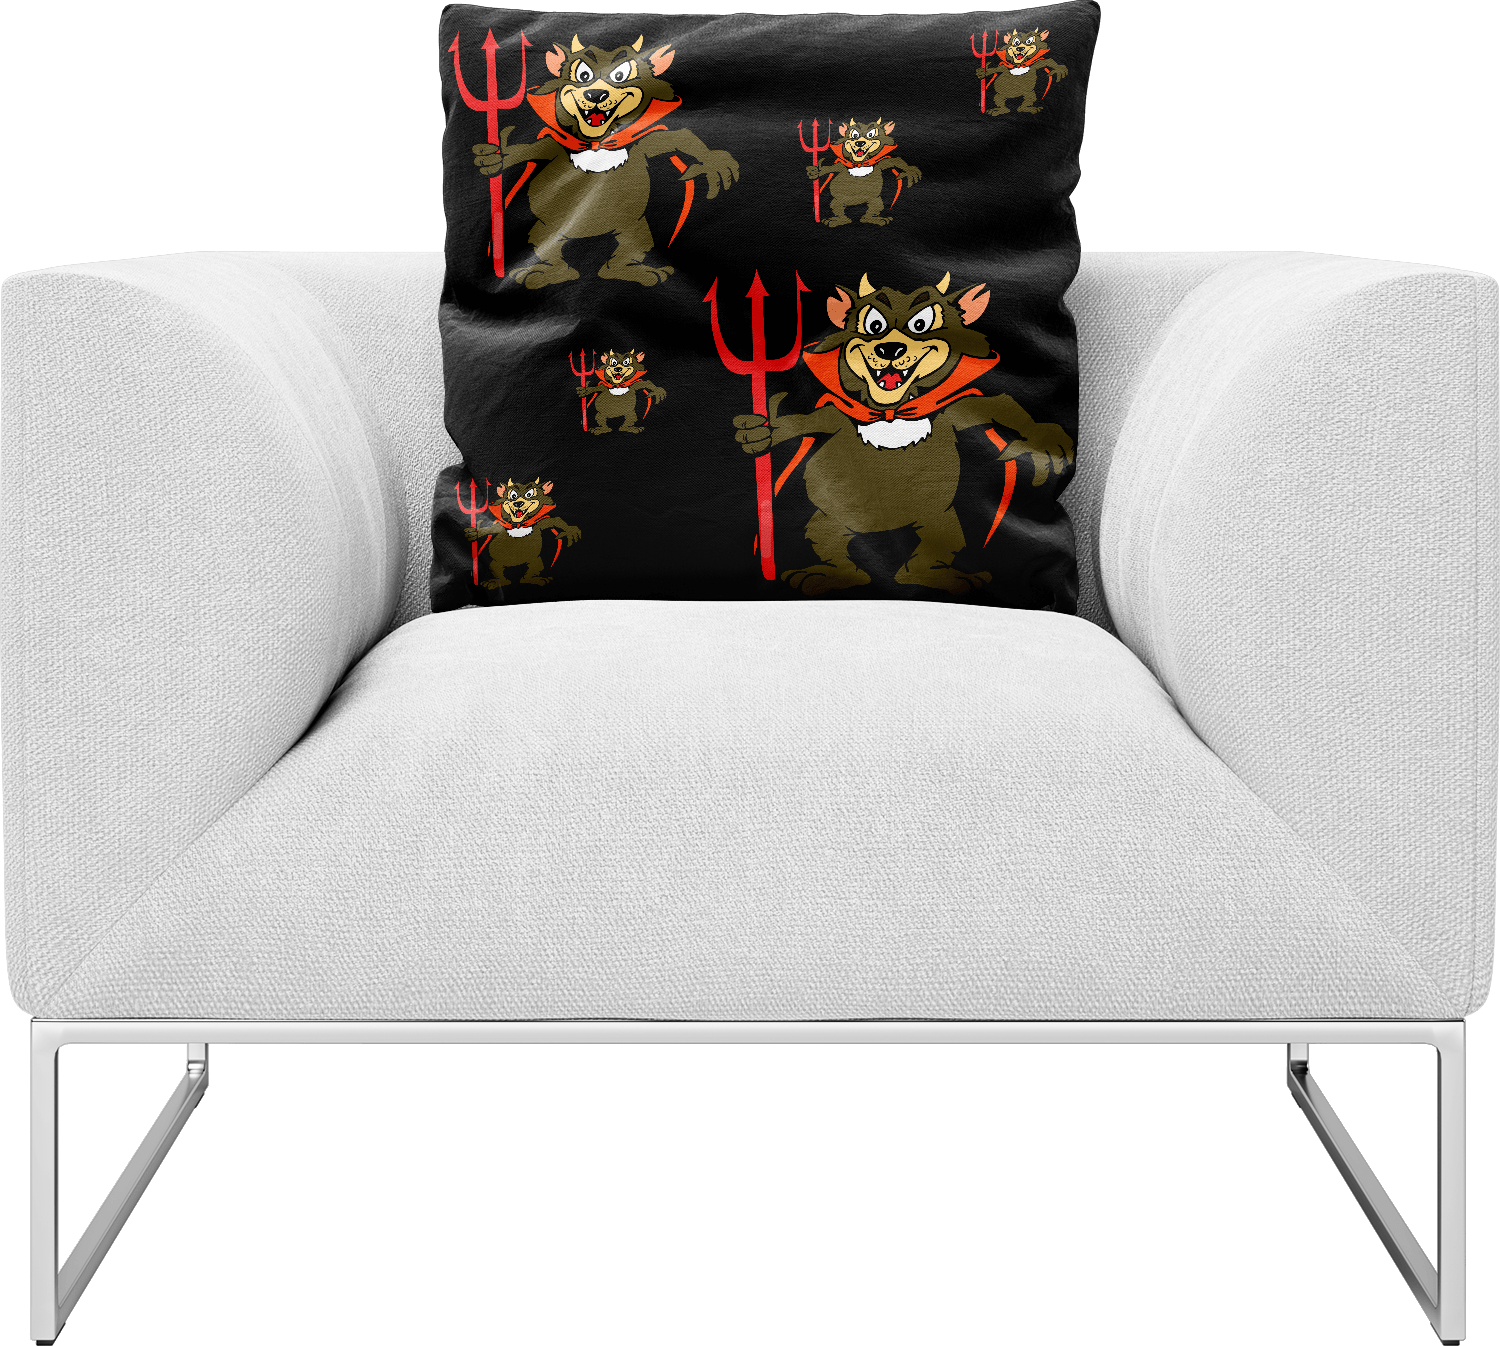 Devil Wears Fungear Pillows Cushions - fungear.com.au